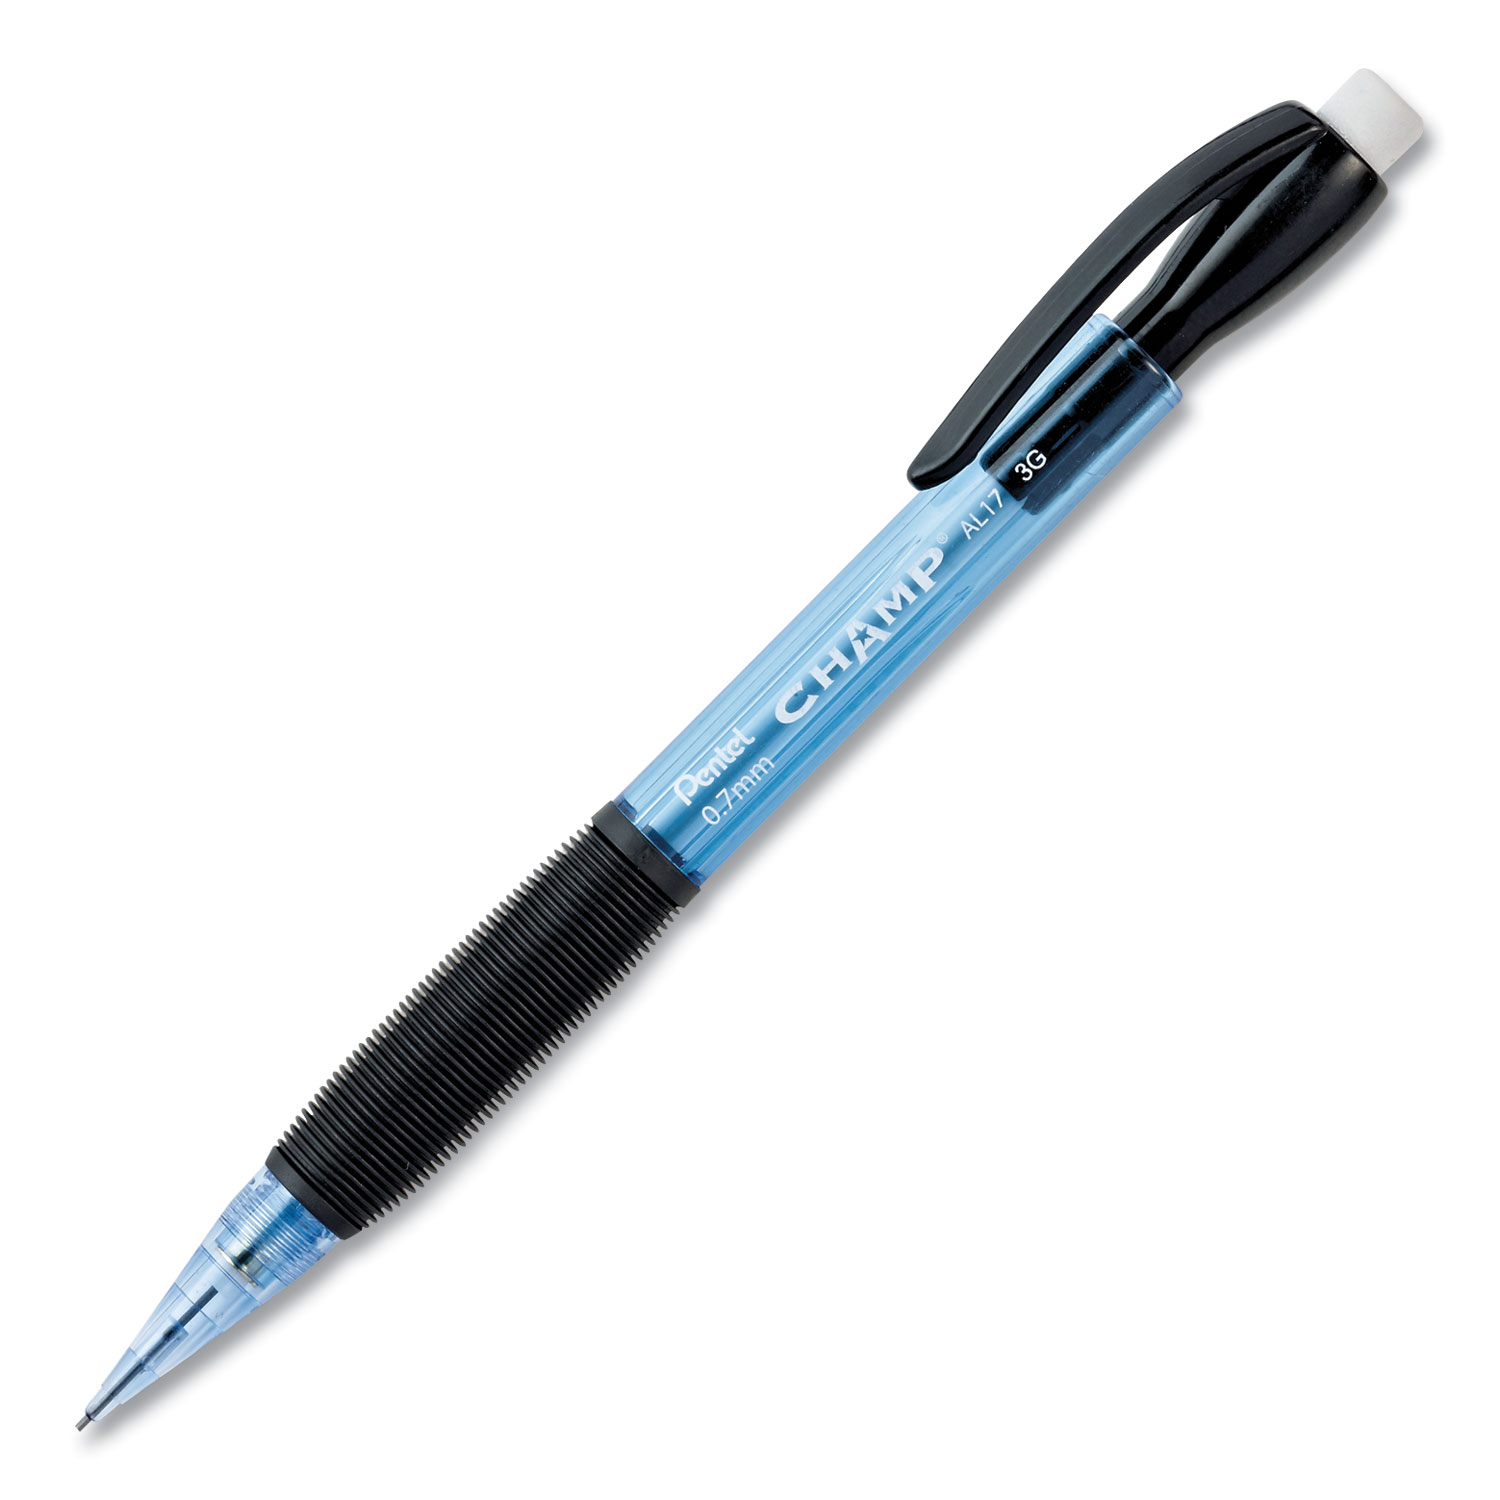  Pentel AL17C Champ Mechanical Pencil, 0.7 mm, HB (#2.5), Black Lead, Blue Barrel, Dozen (PENAL17C) 